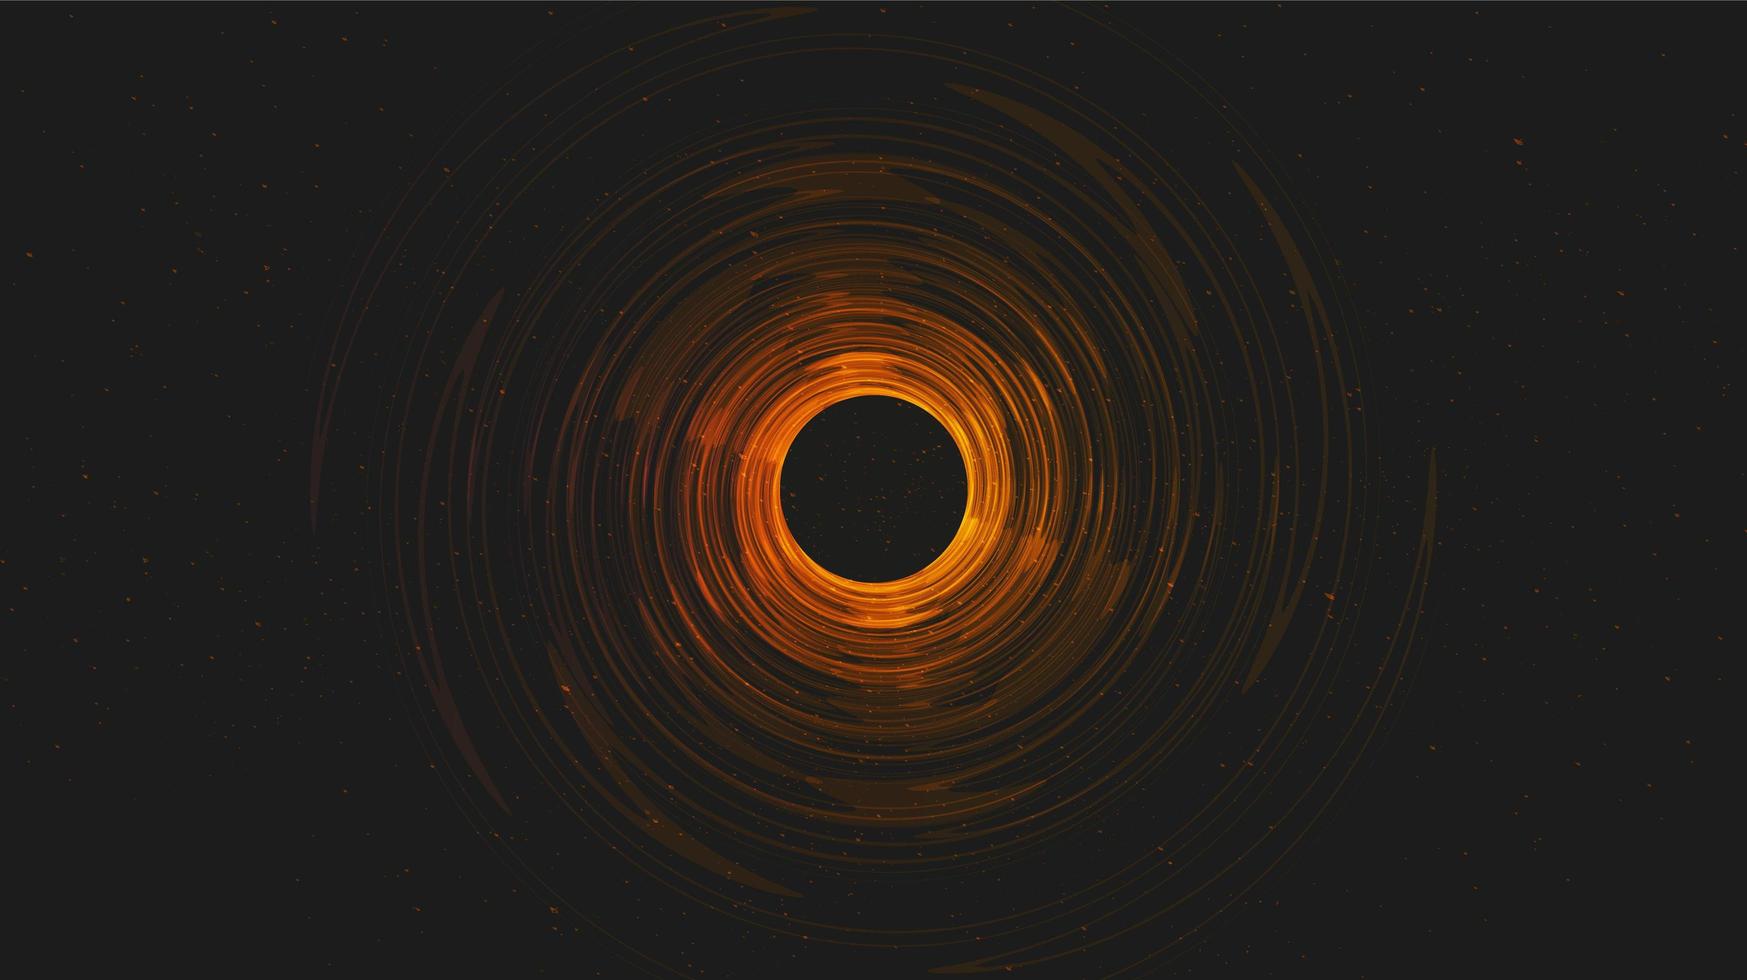 realistisches solares schwarzes loch auf galaxie background.planet und physikkonzeptdesign, vektorillustration. vektor